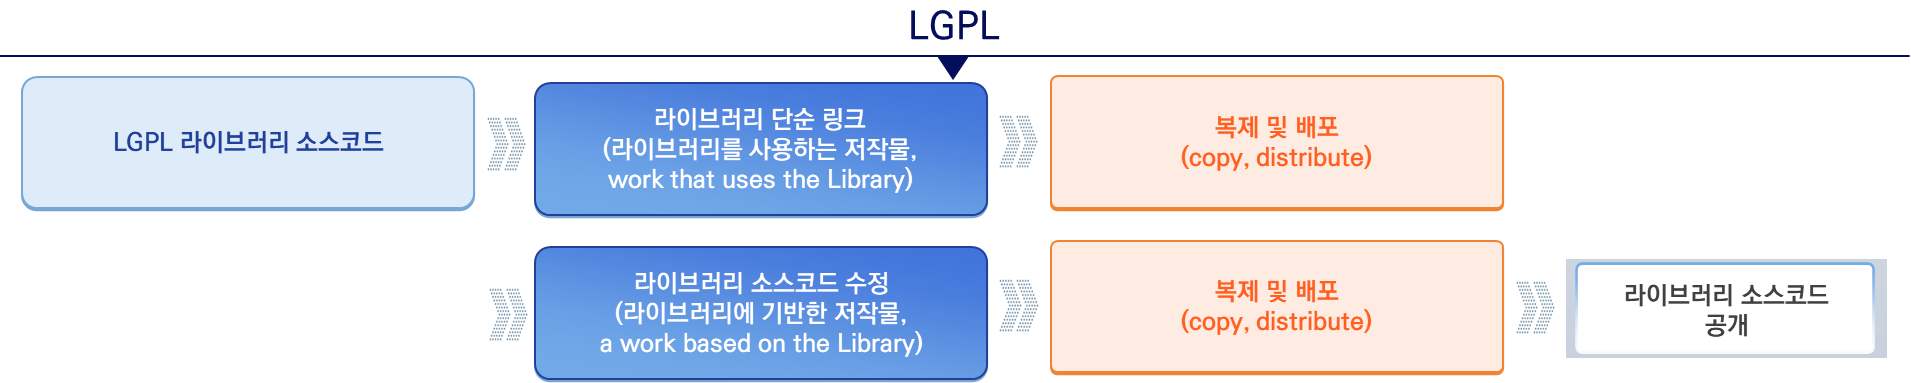 라이브러리 수정 여부에 따른 LGPL 코드 공개범위